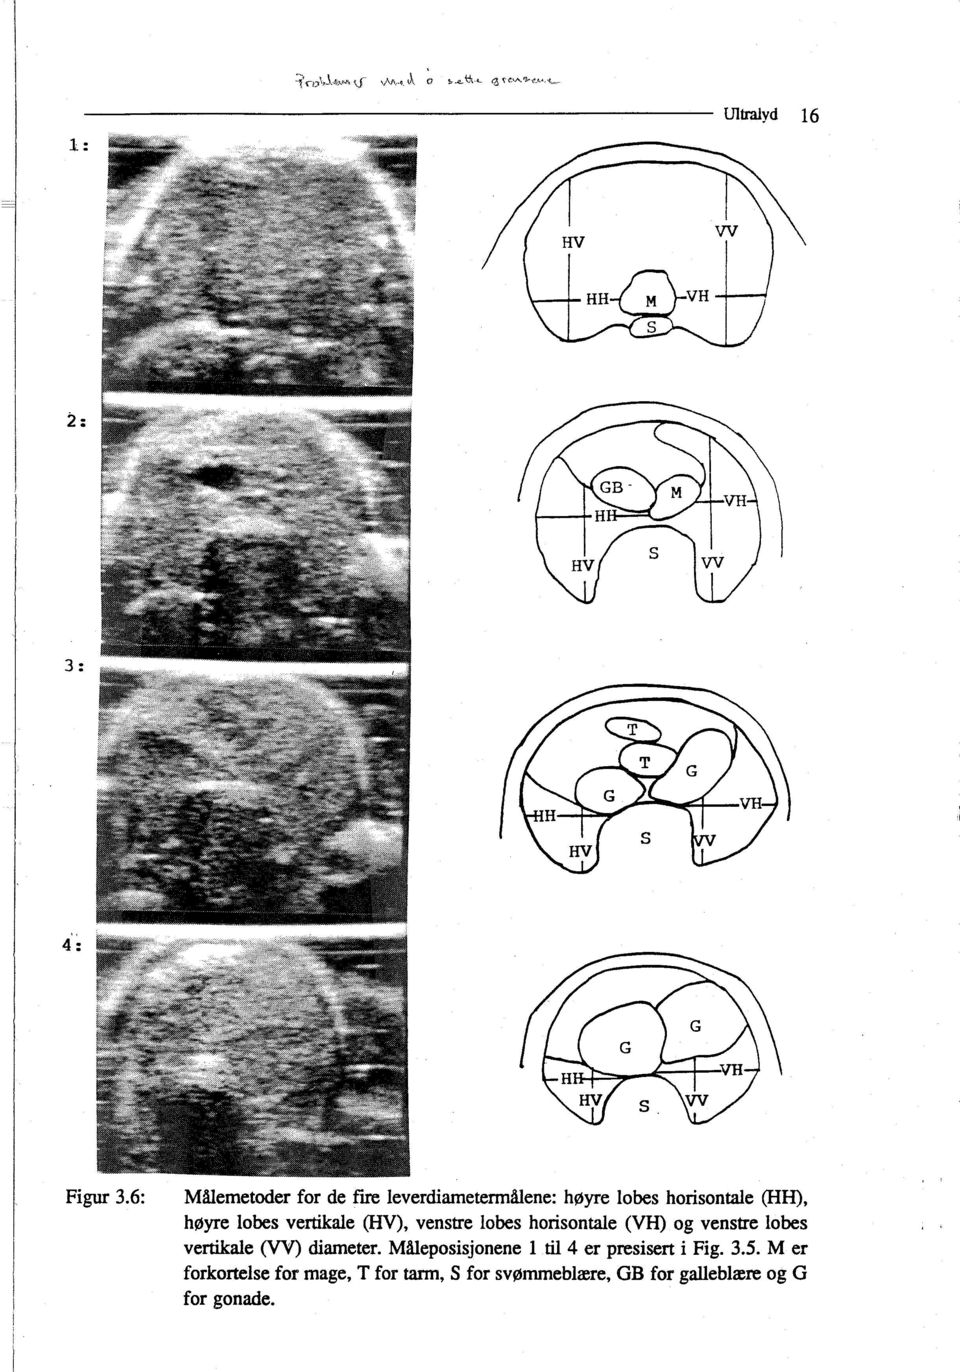 (HV), venstre lobes horisontale (VH) og venstre lobes vertikale (VV) diameter.